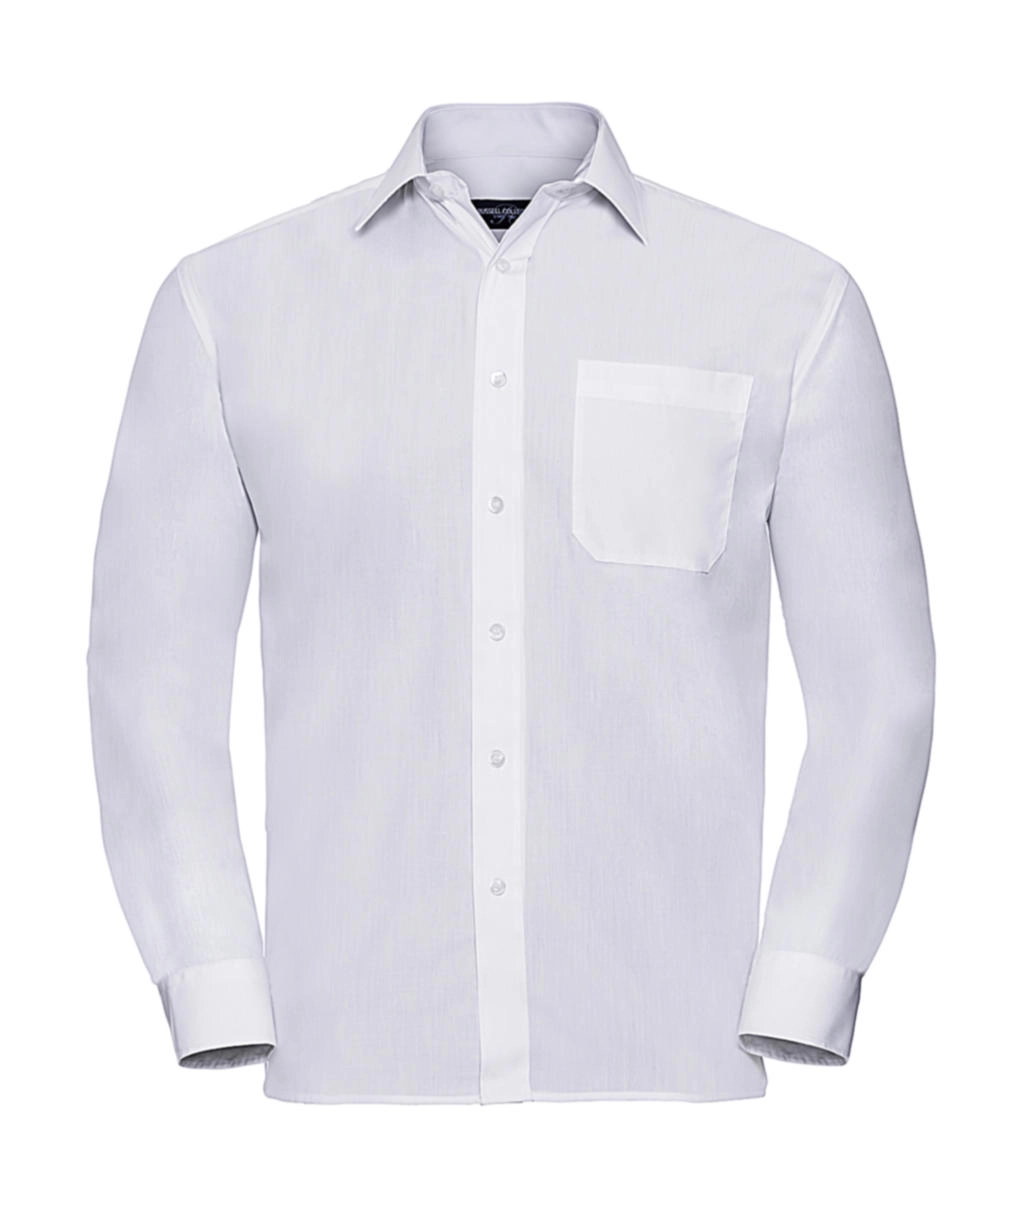 Poplin Shirt LS zum Besticken und Bedrucken in der Farbe White mit Ihren Logo, Schriftzug oder Motiv.